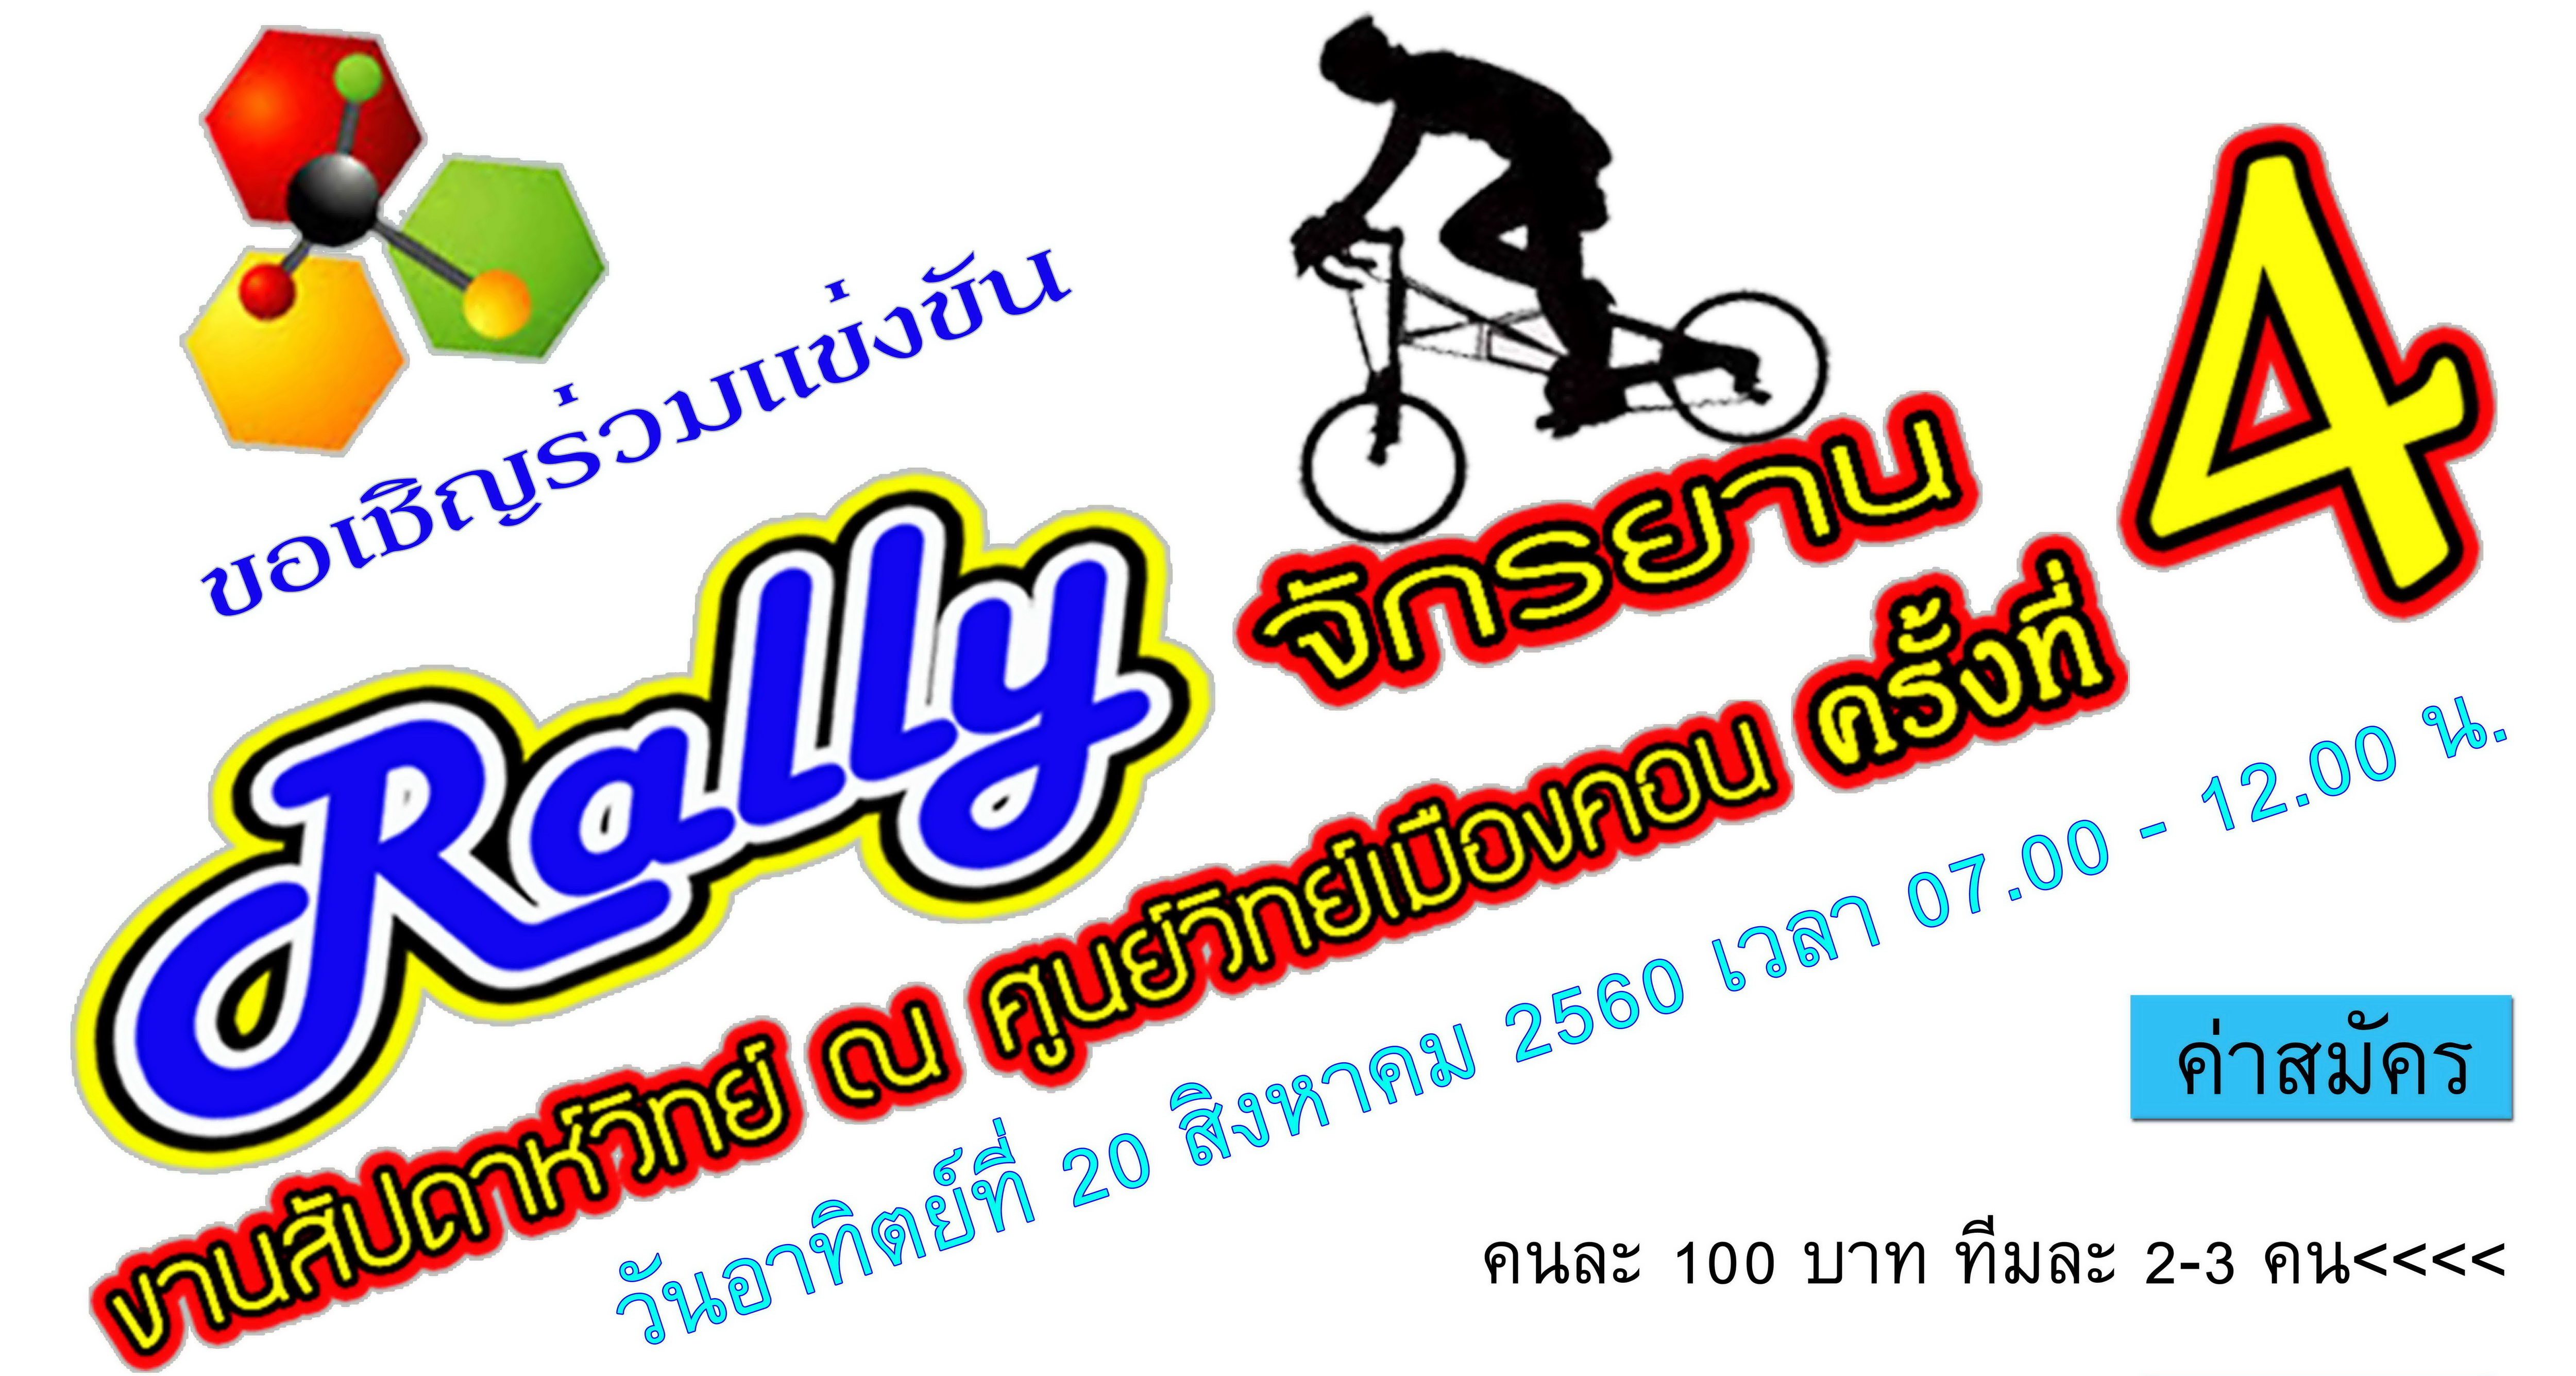 ขอเชิญร่วมแข่งขันงาน rally จักรยาน งานสัปดาห์วิทย์ ณ ศูนย์วิทย์เมืองคอน ครั้งที่ 4